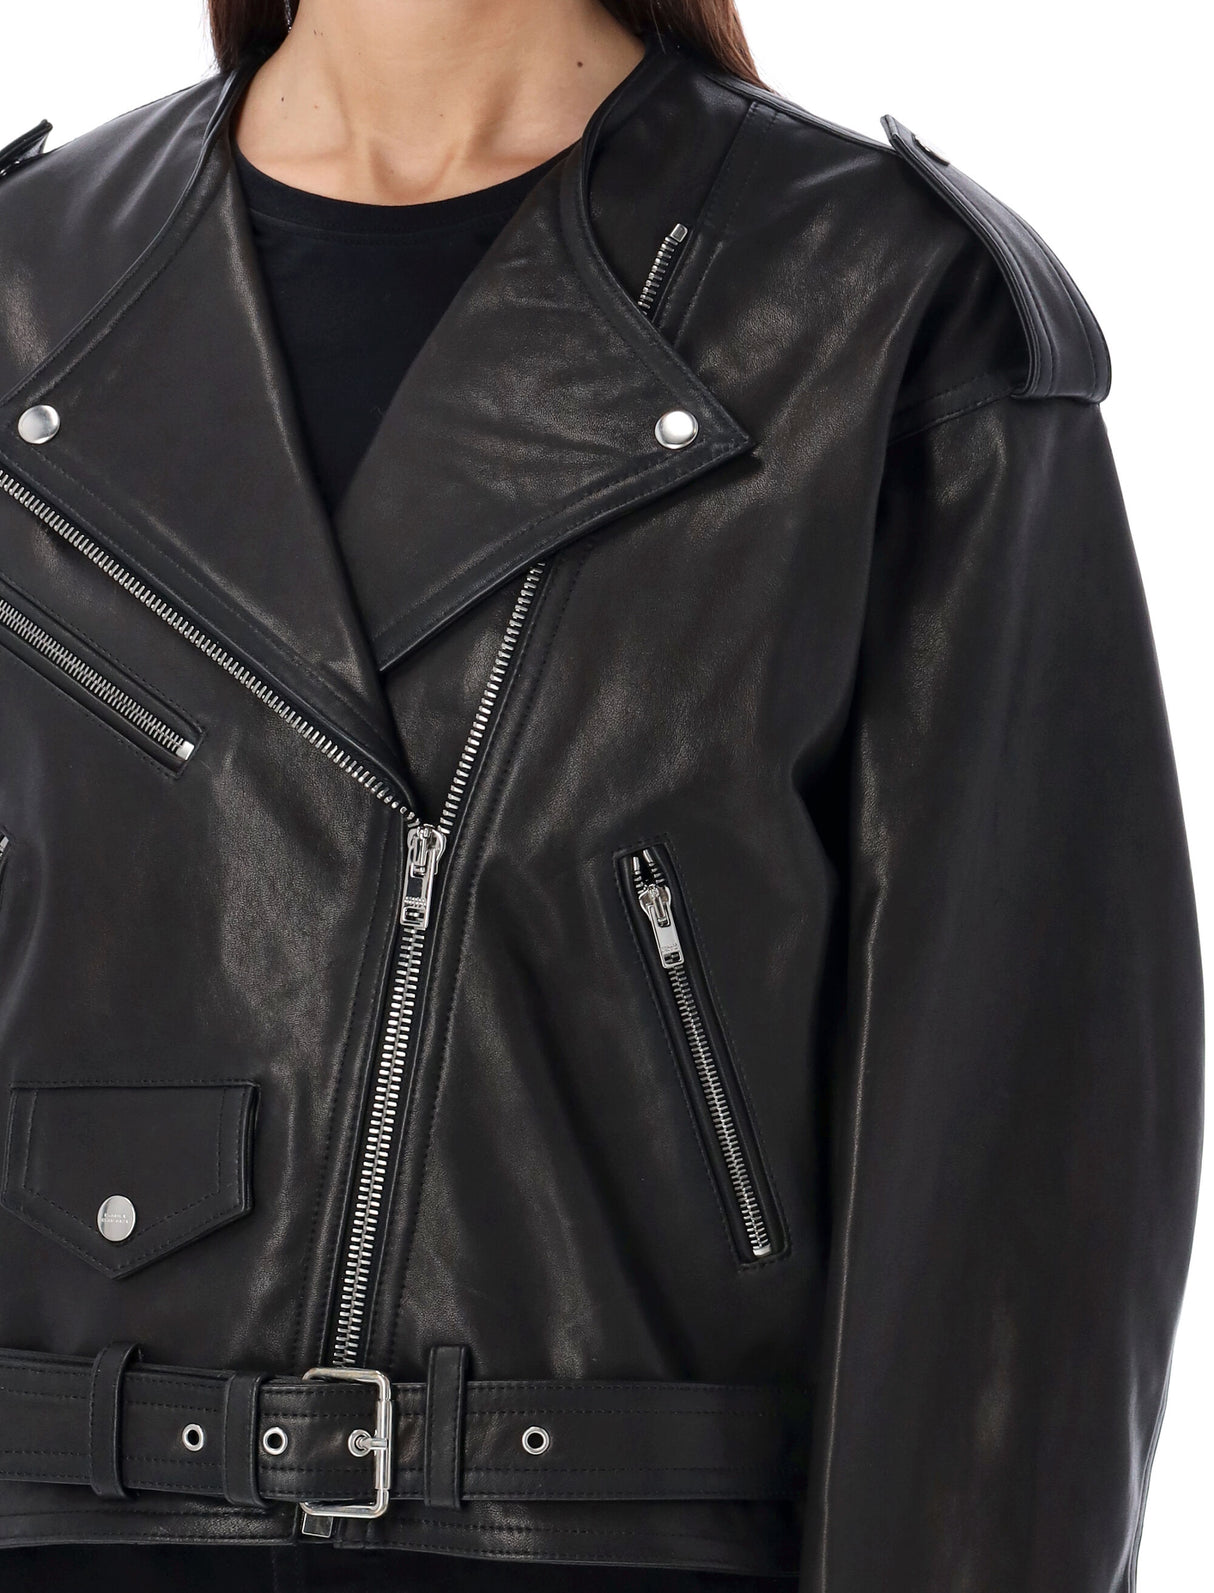 ISABEL MARANT Stylish Black Leather Jacket with Edgy Details for Women